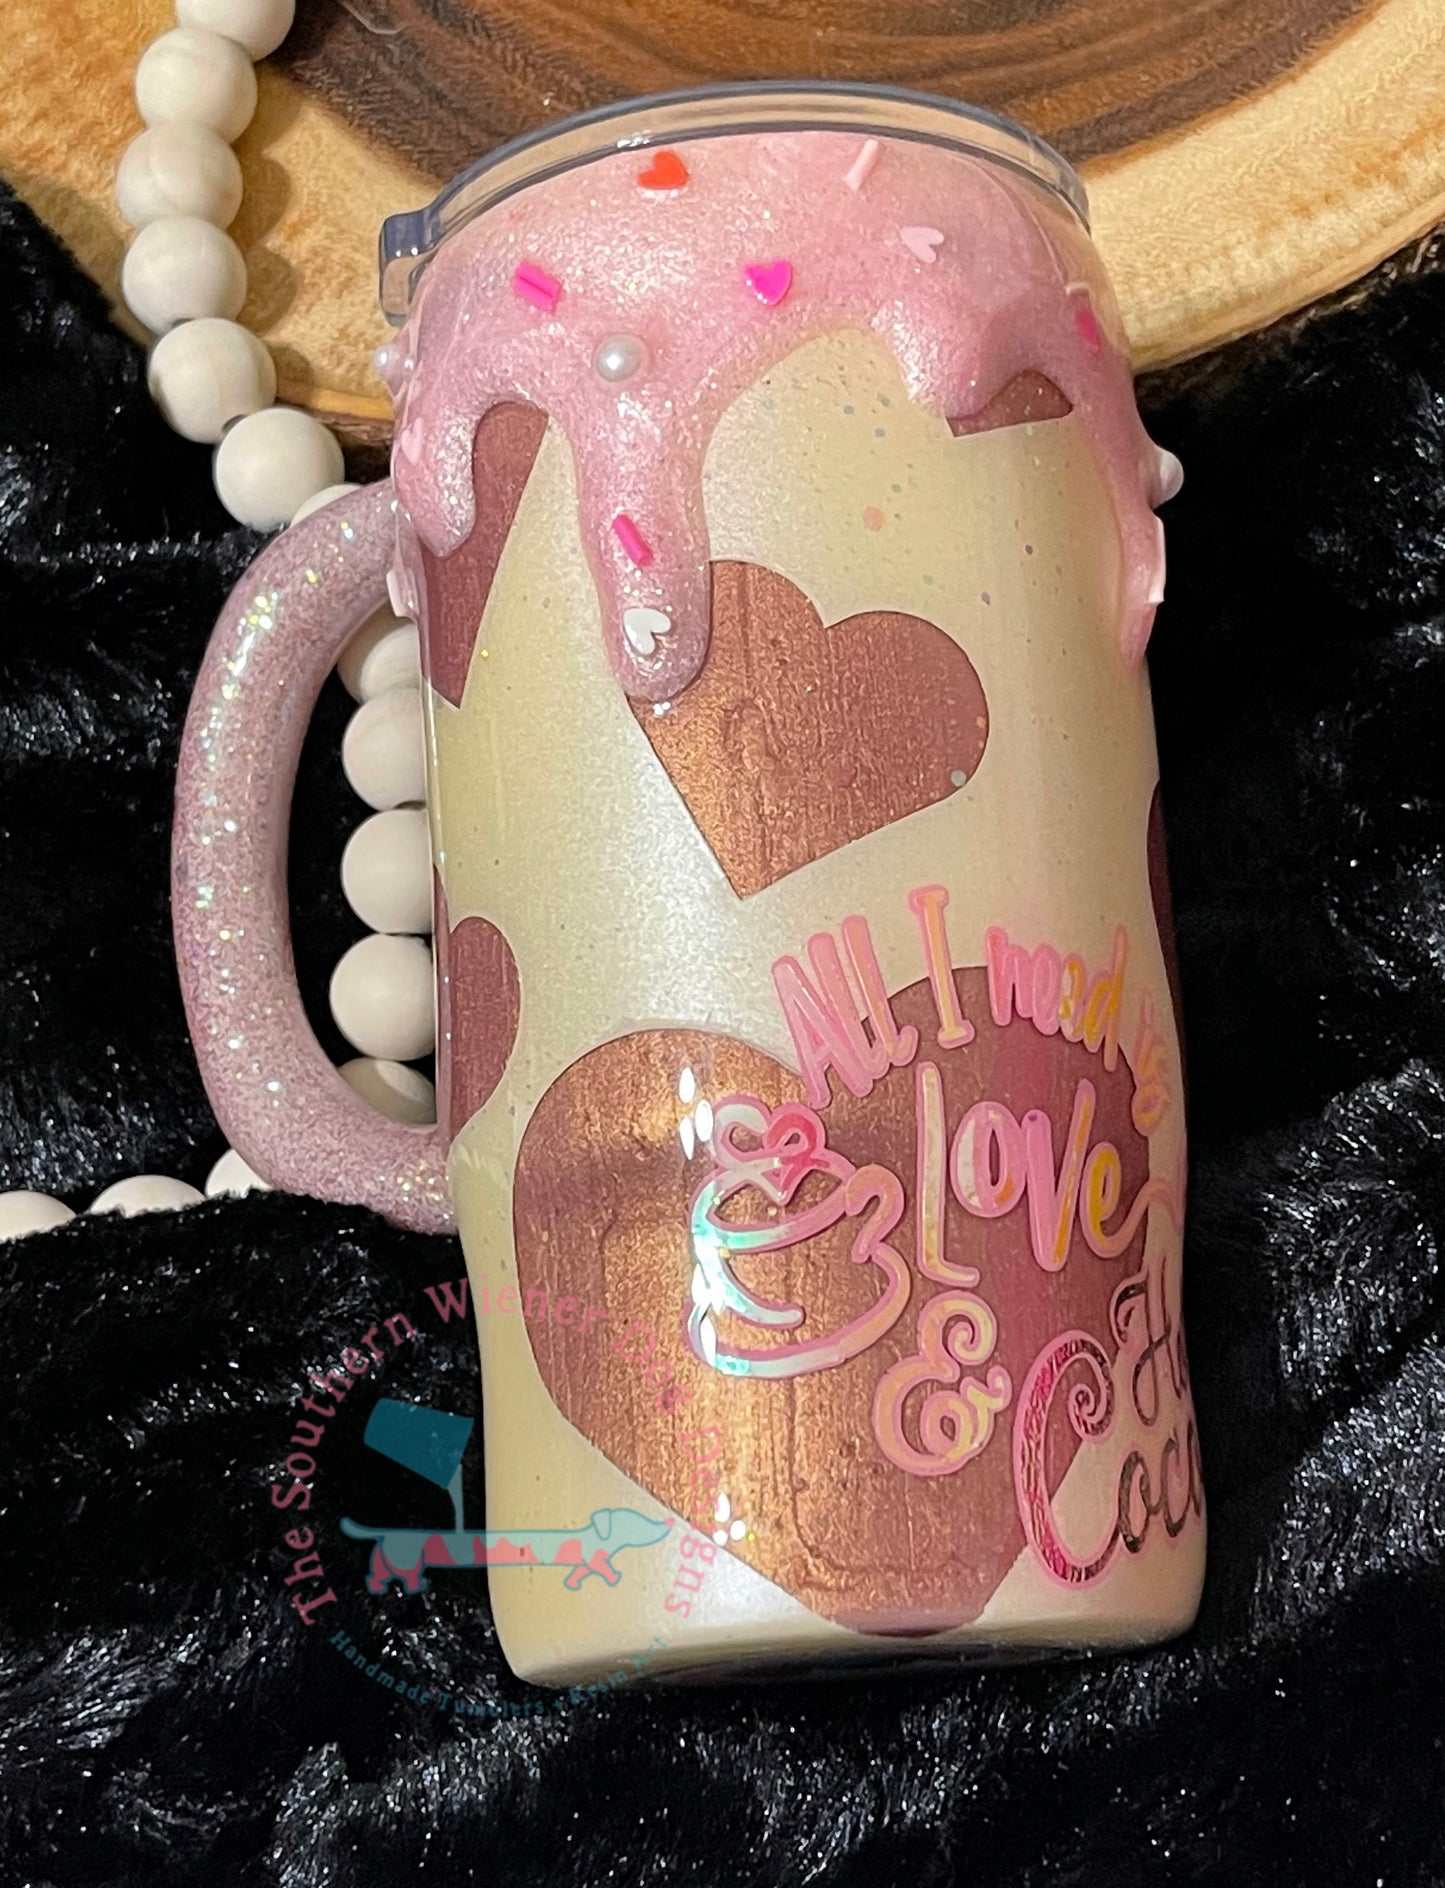 Hot cocoa mug